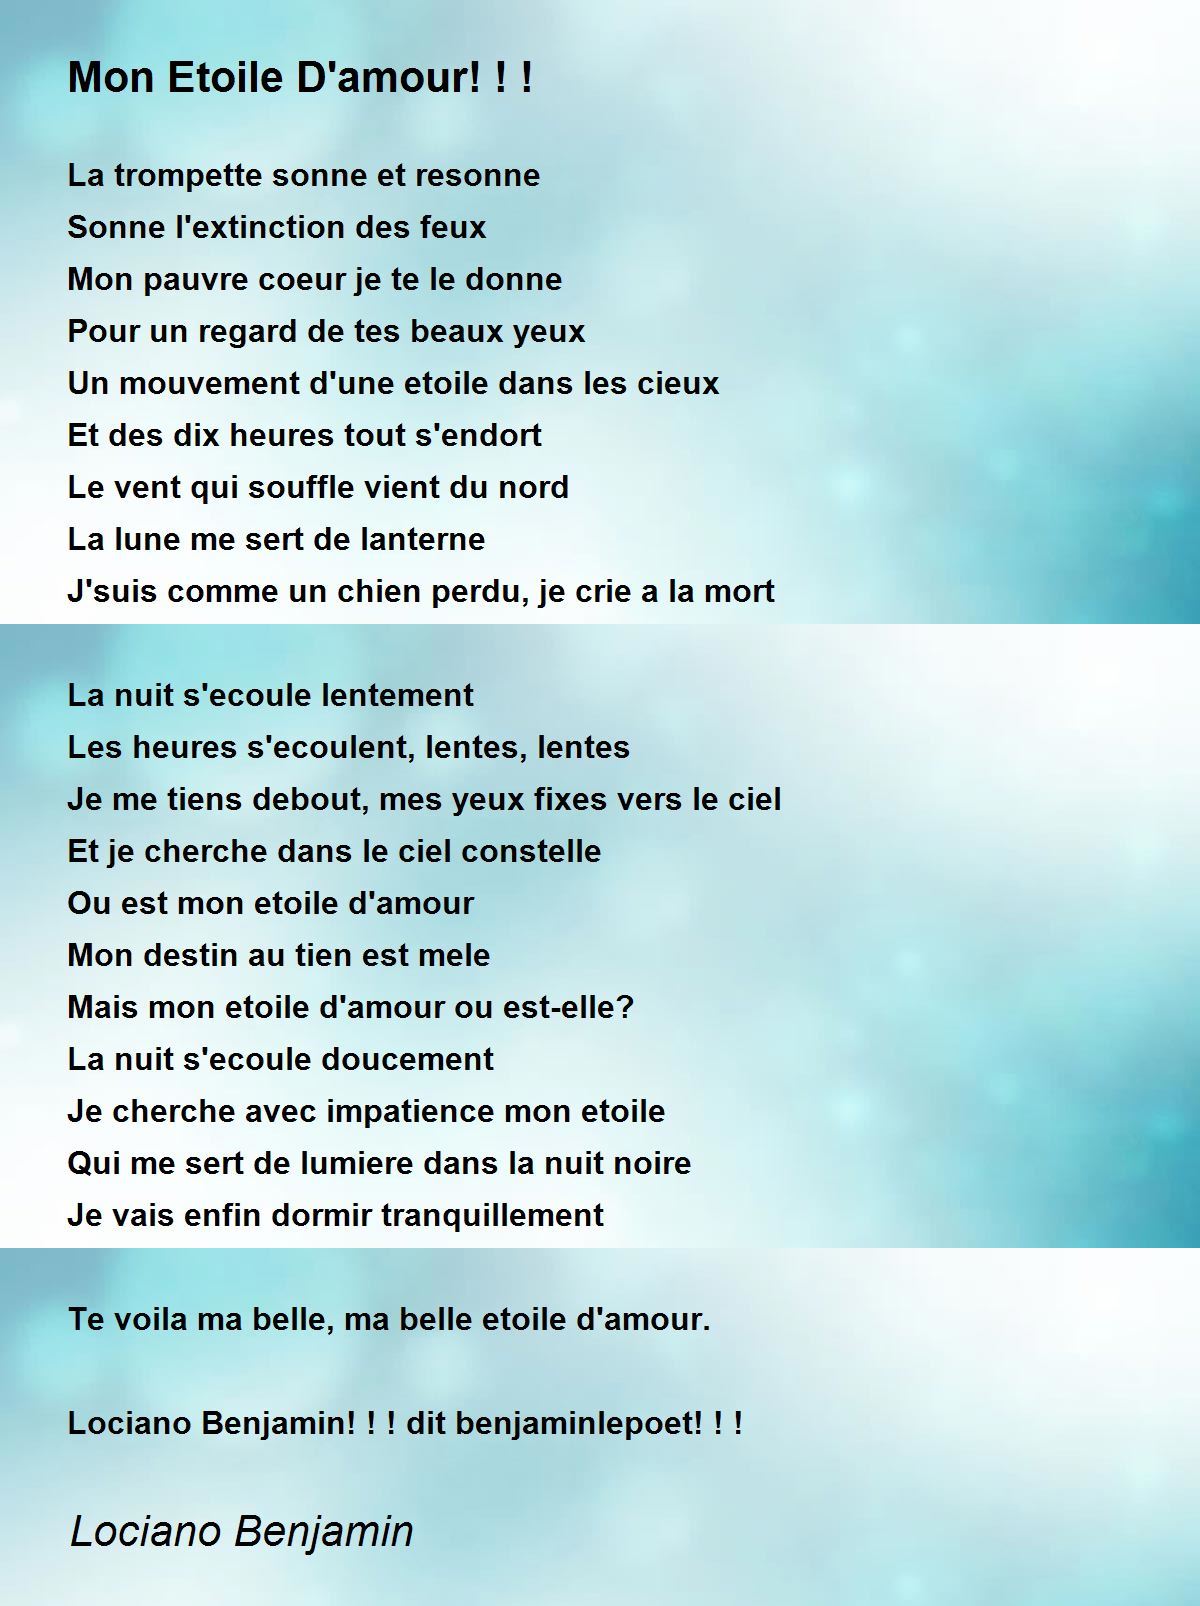 Mon Etoile D Amour Mon Etoile D Amour Poem By Lociano Benjamin